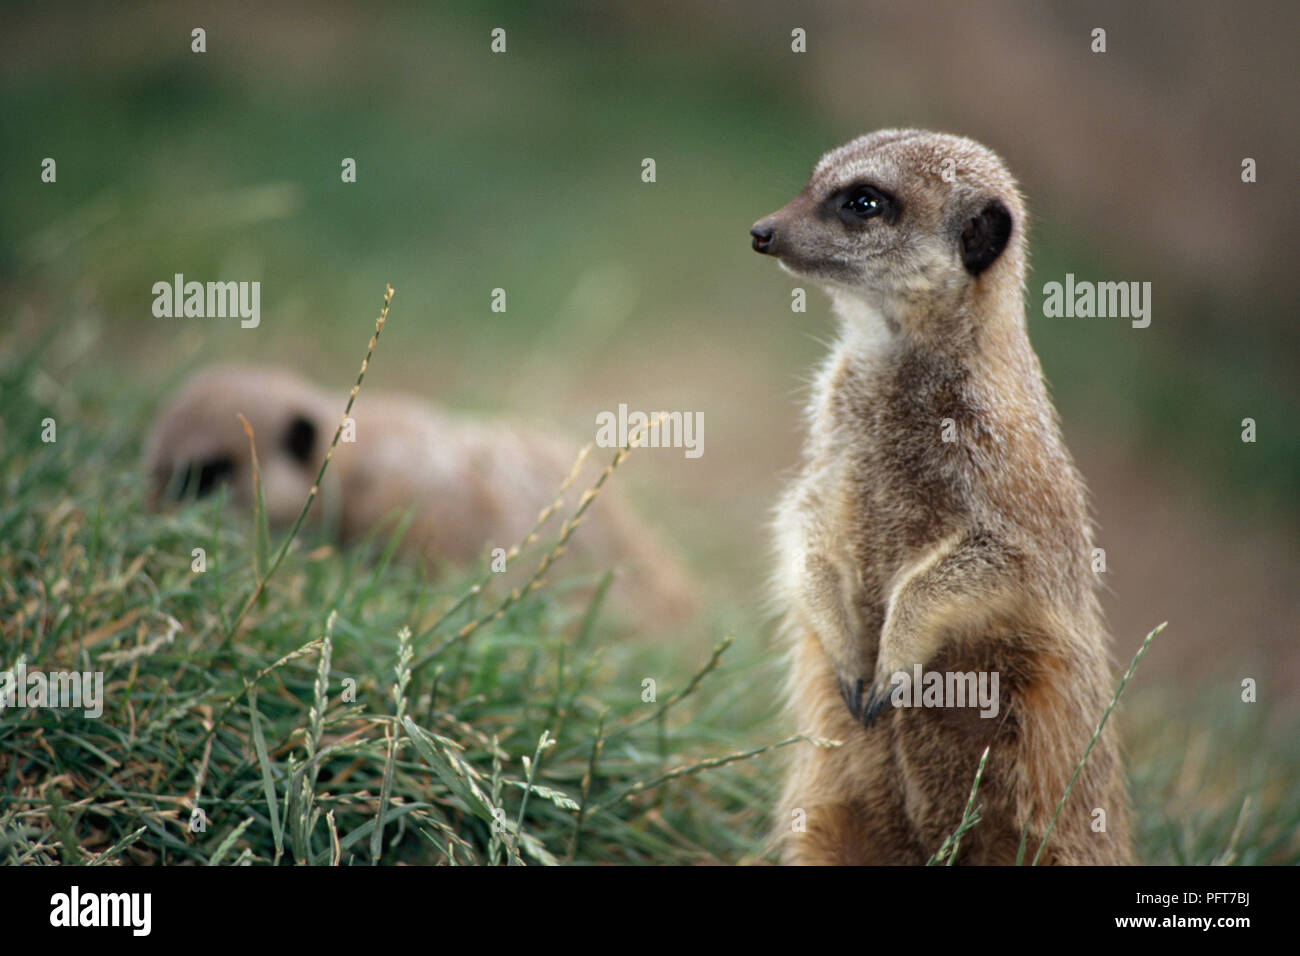 Suricata o (Suricata suricatta) mirando hacia el lado, otro suricata o en segundo plano Foto de stock